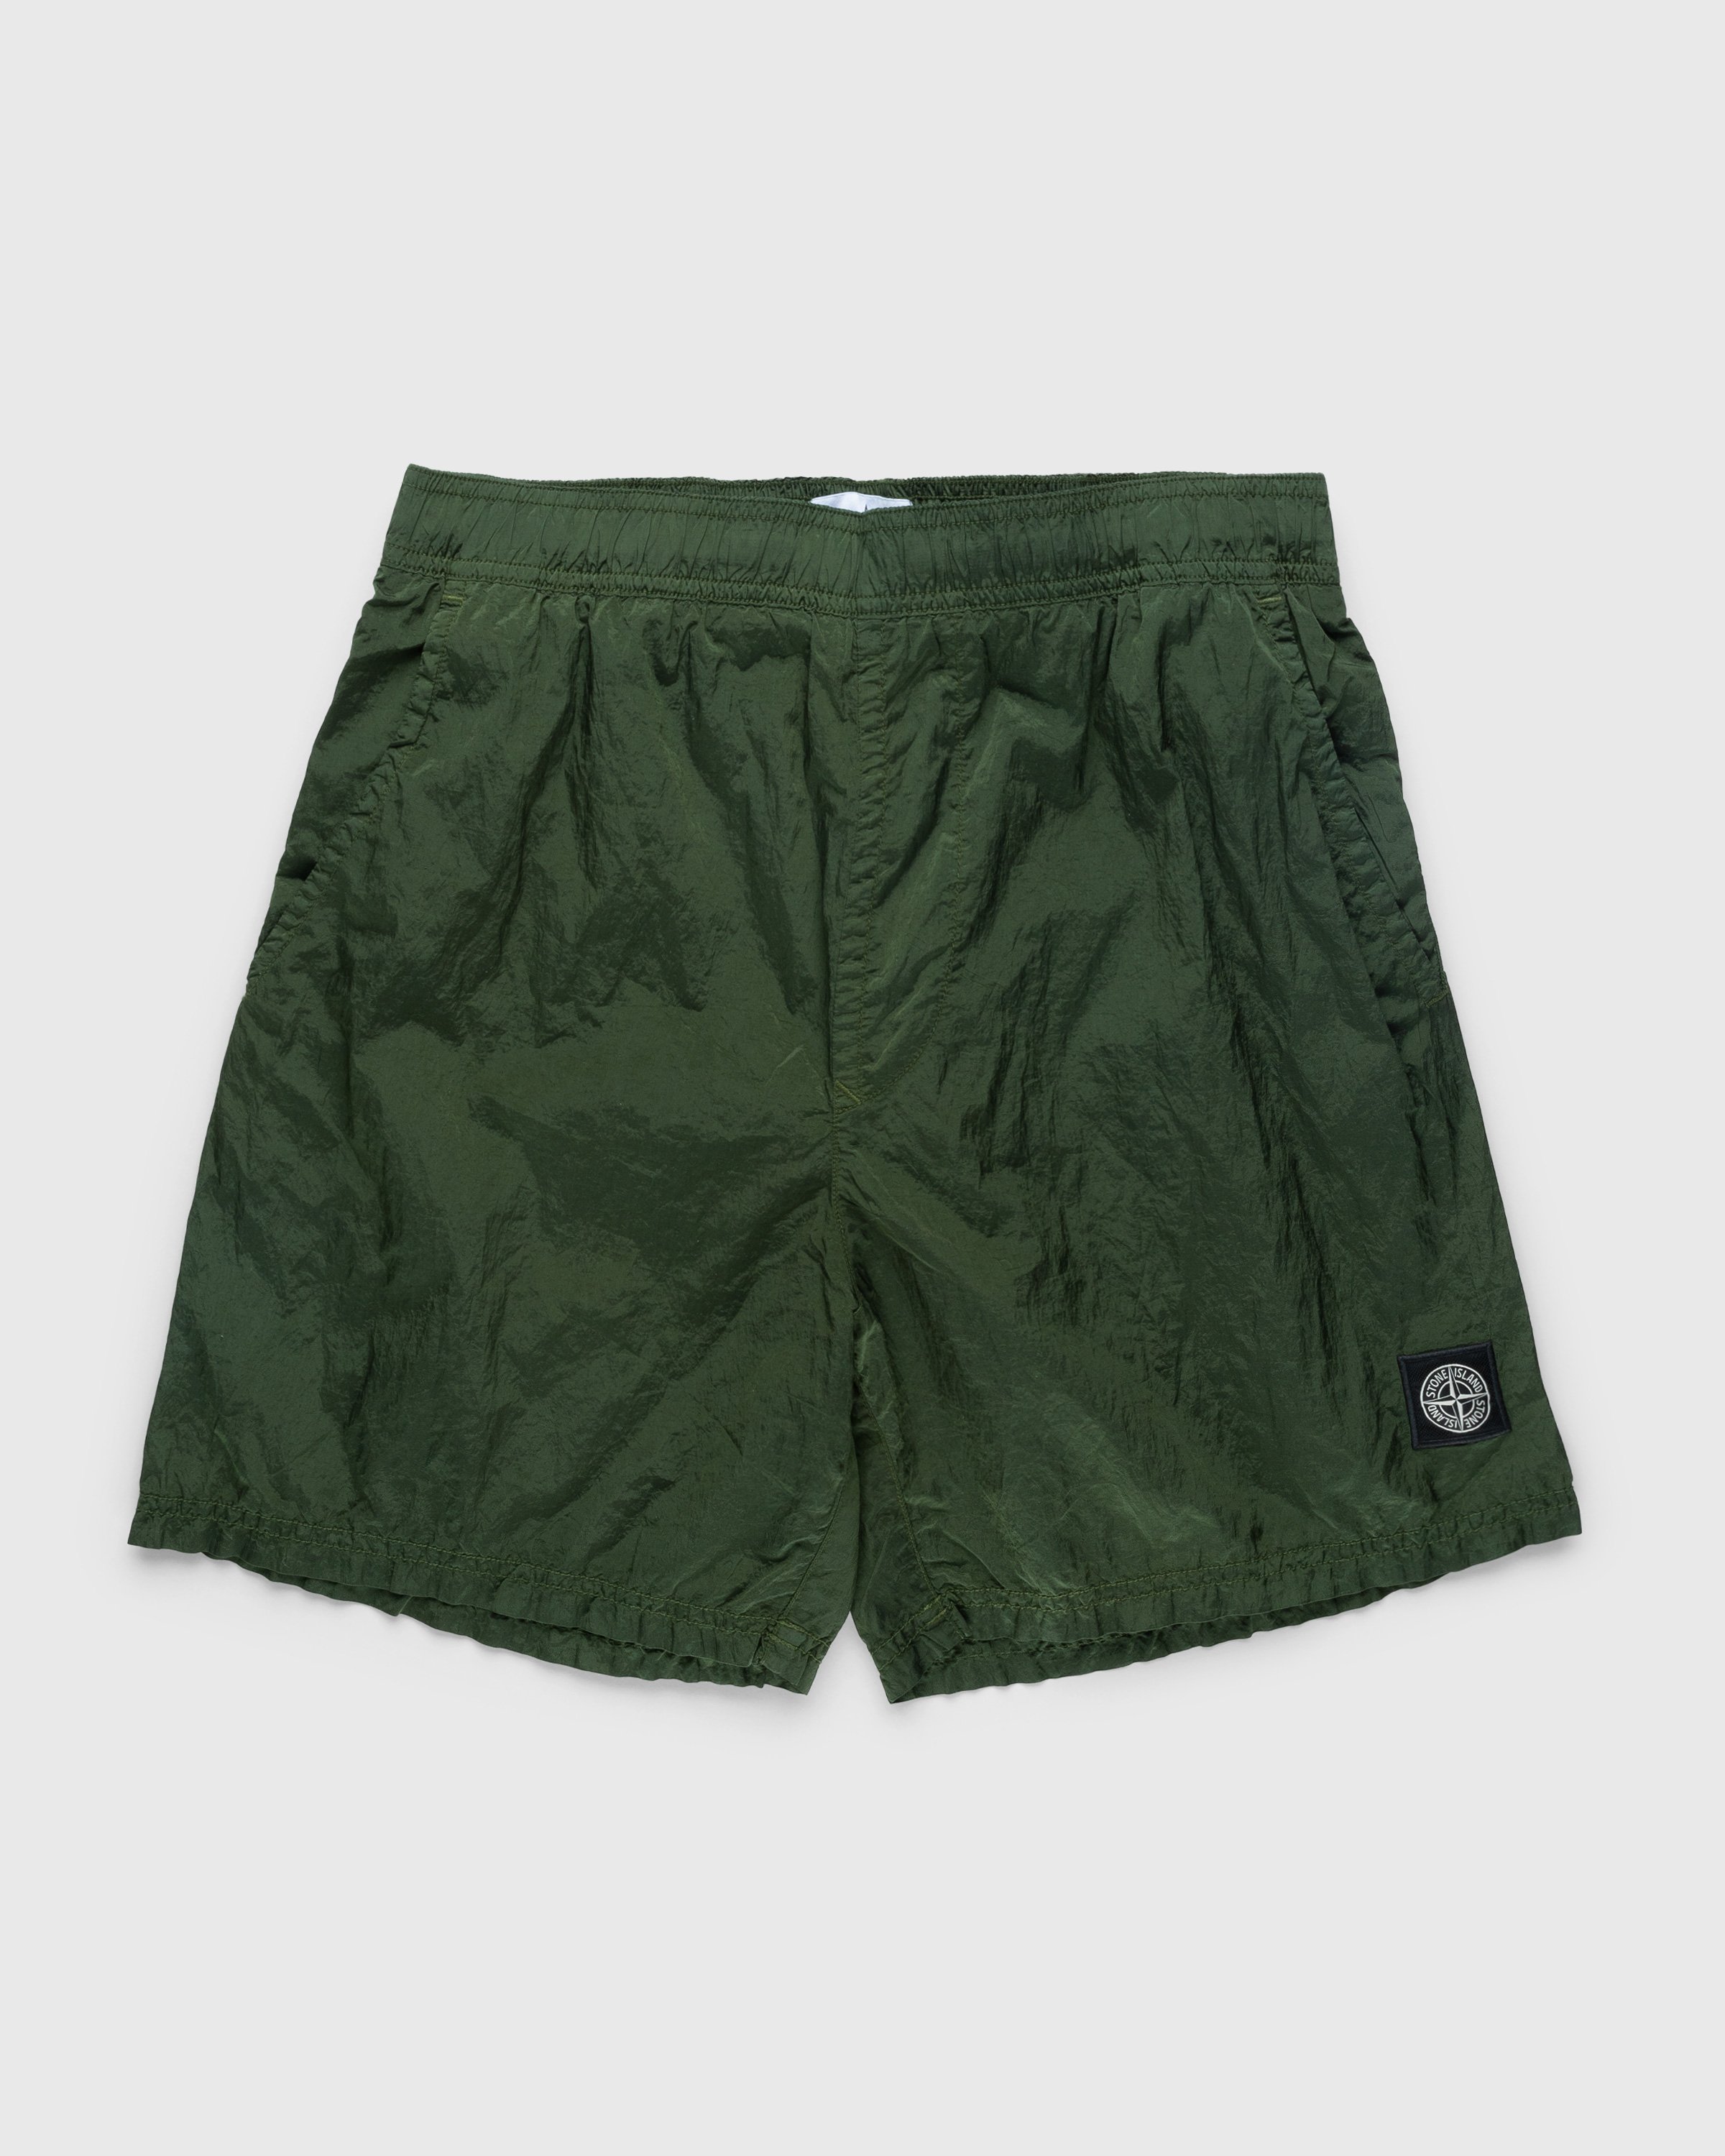 Stone Island - Nylon Metal Swim Shorts Olive - Clothing - Green - Image 1